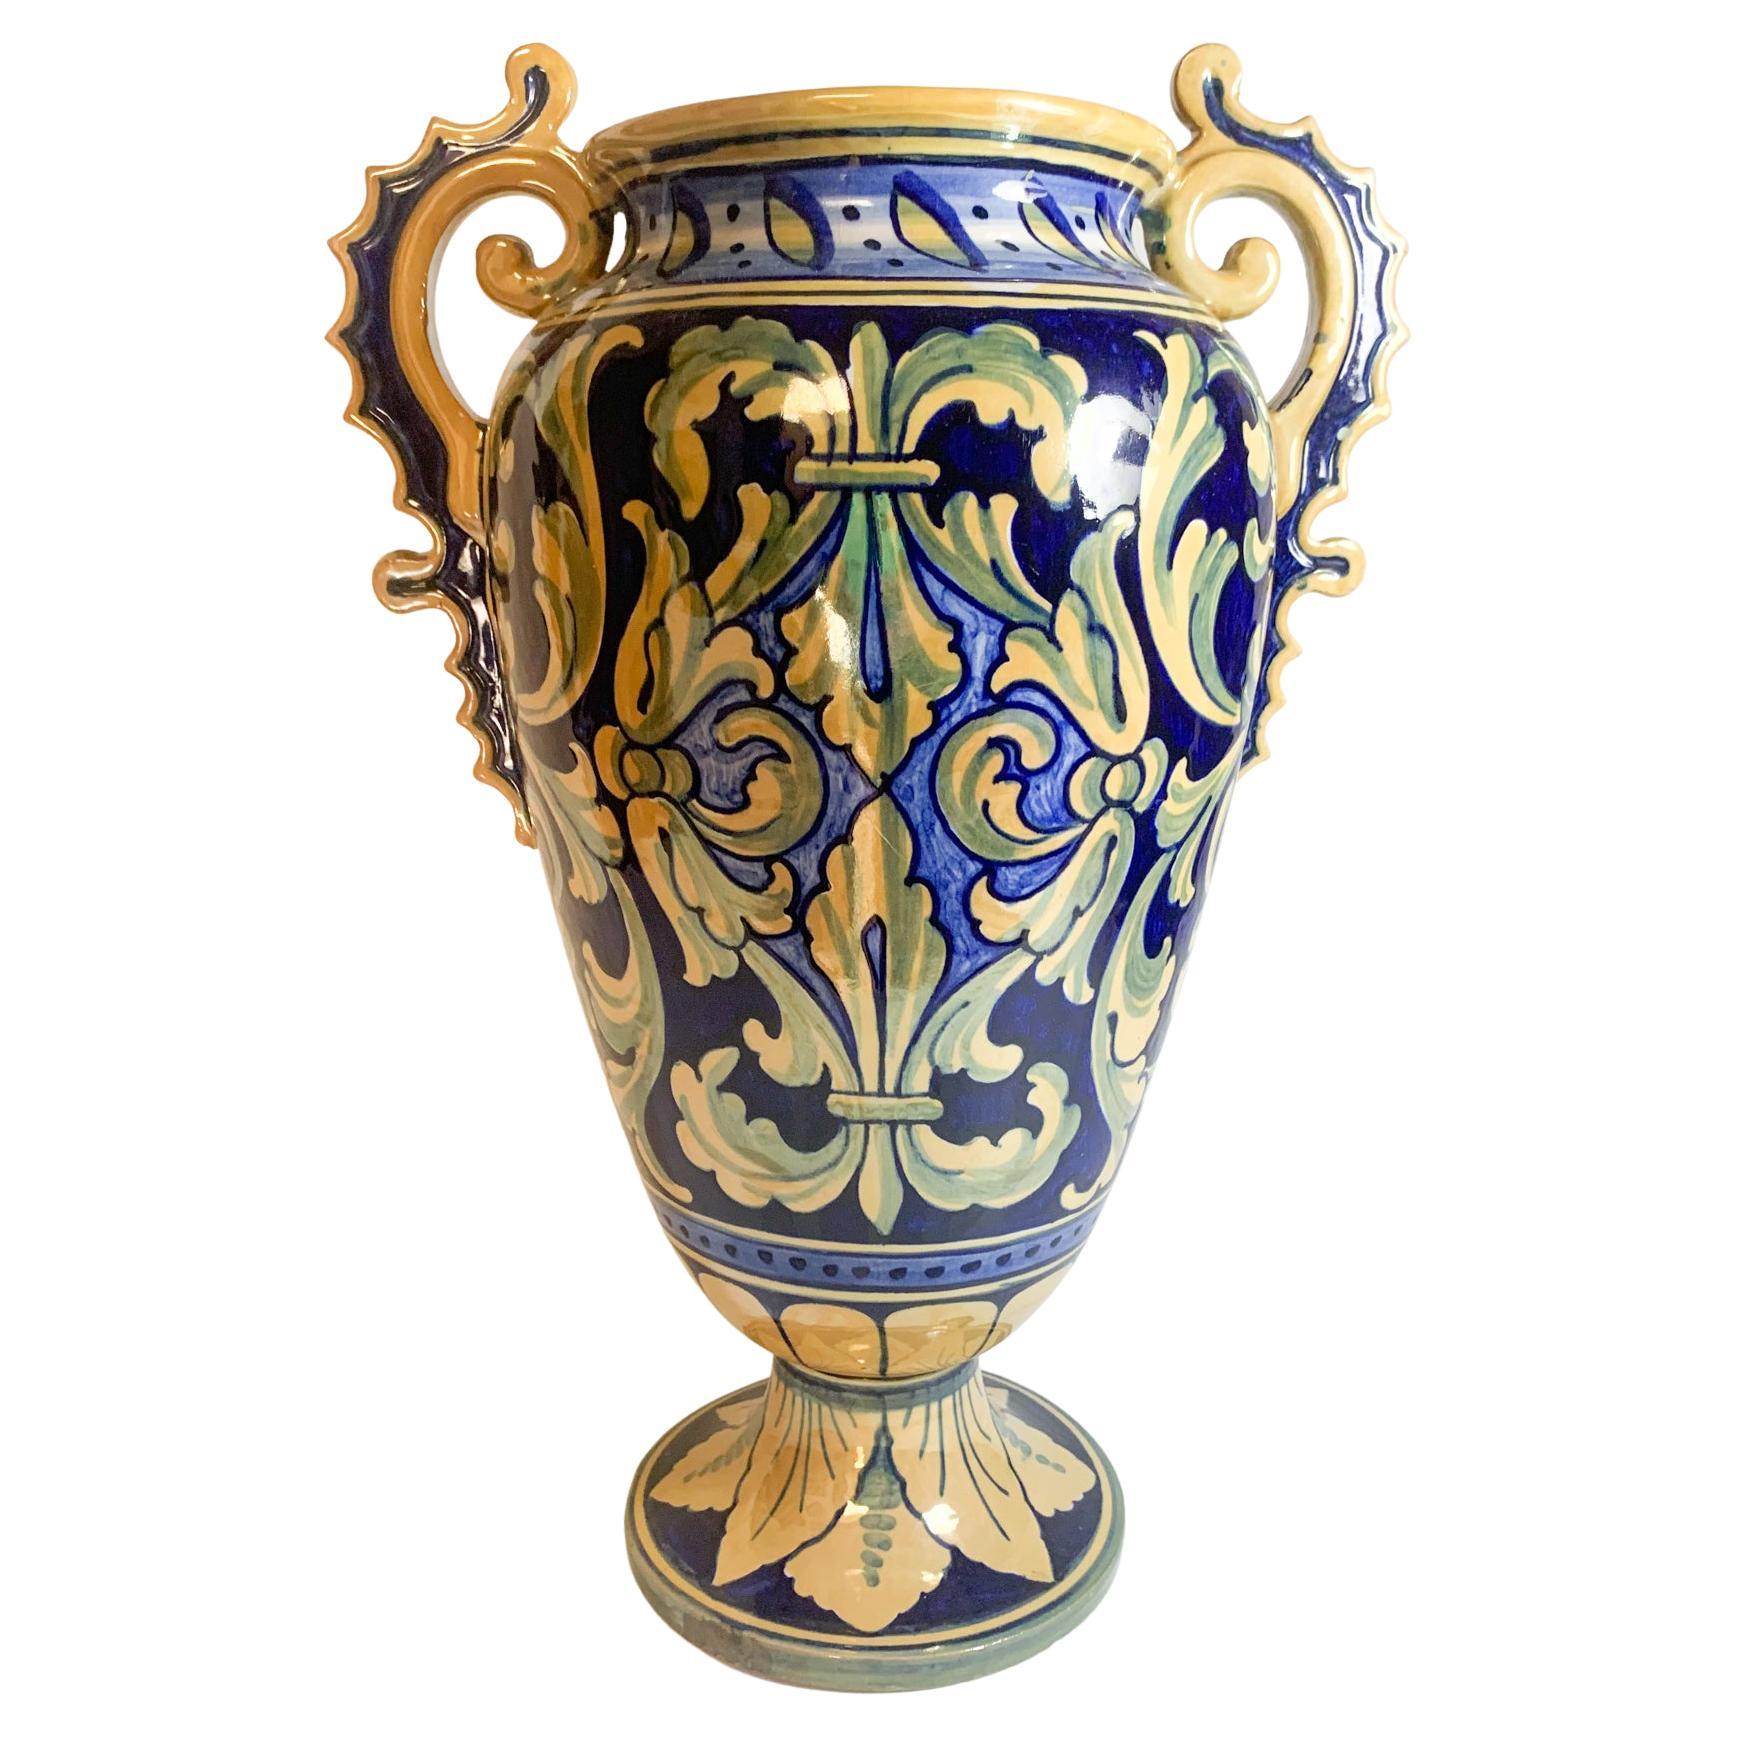 Italian Hand Painted Iridescent Ceramic Vase by Gualdo Tadino from the 1950s